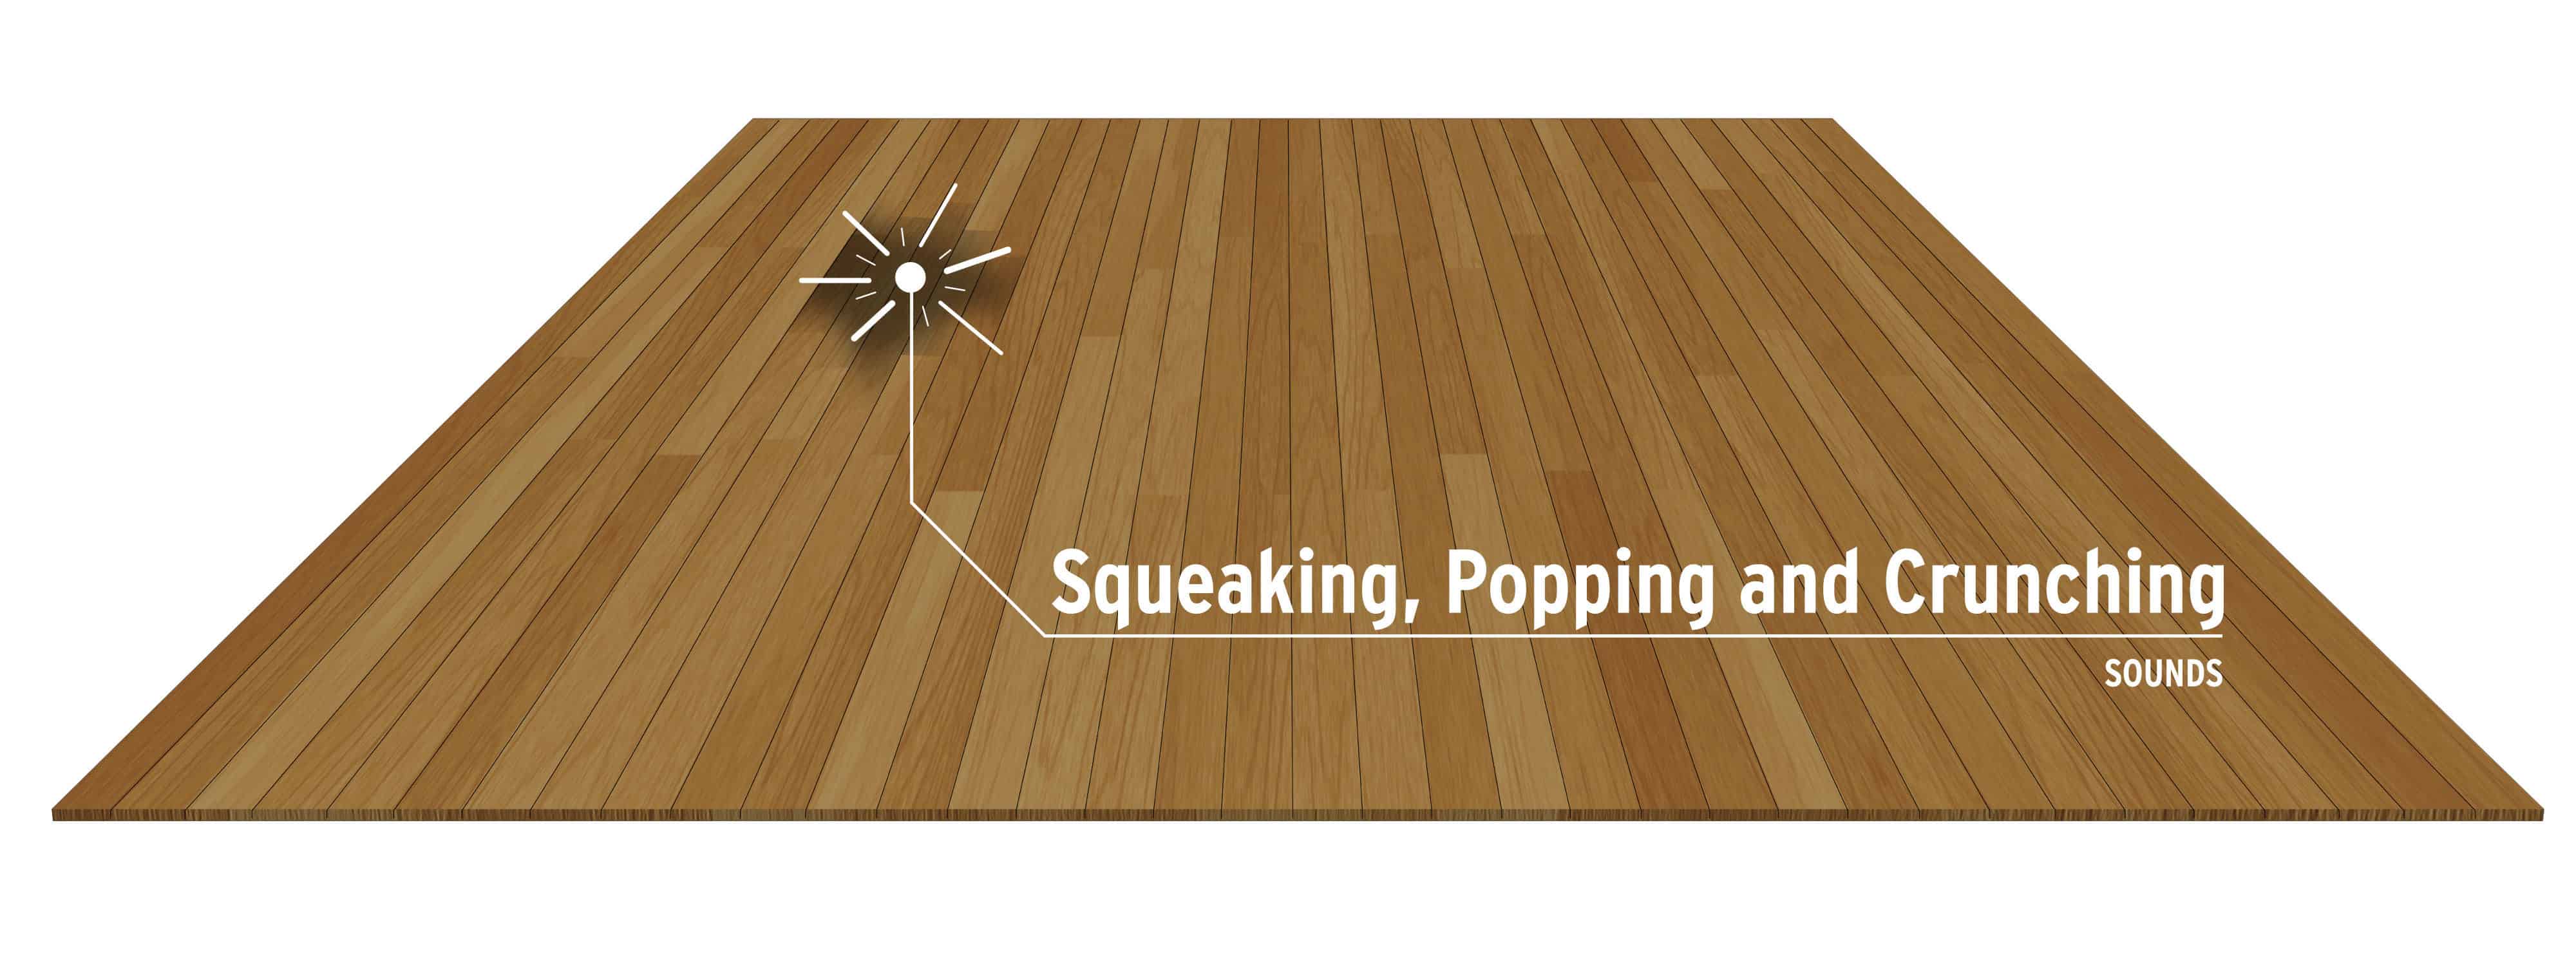 Crunching Engineered Floors, Glue Injection Repair Hardwood Floors